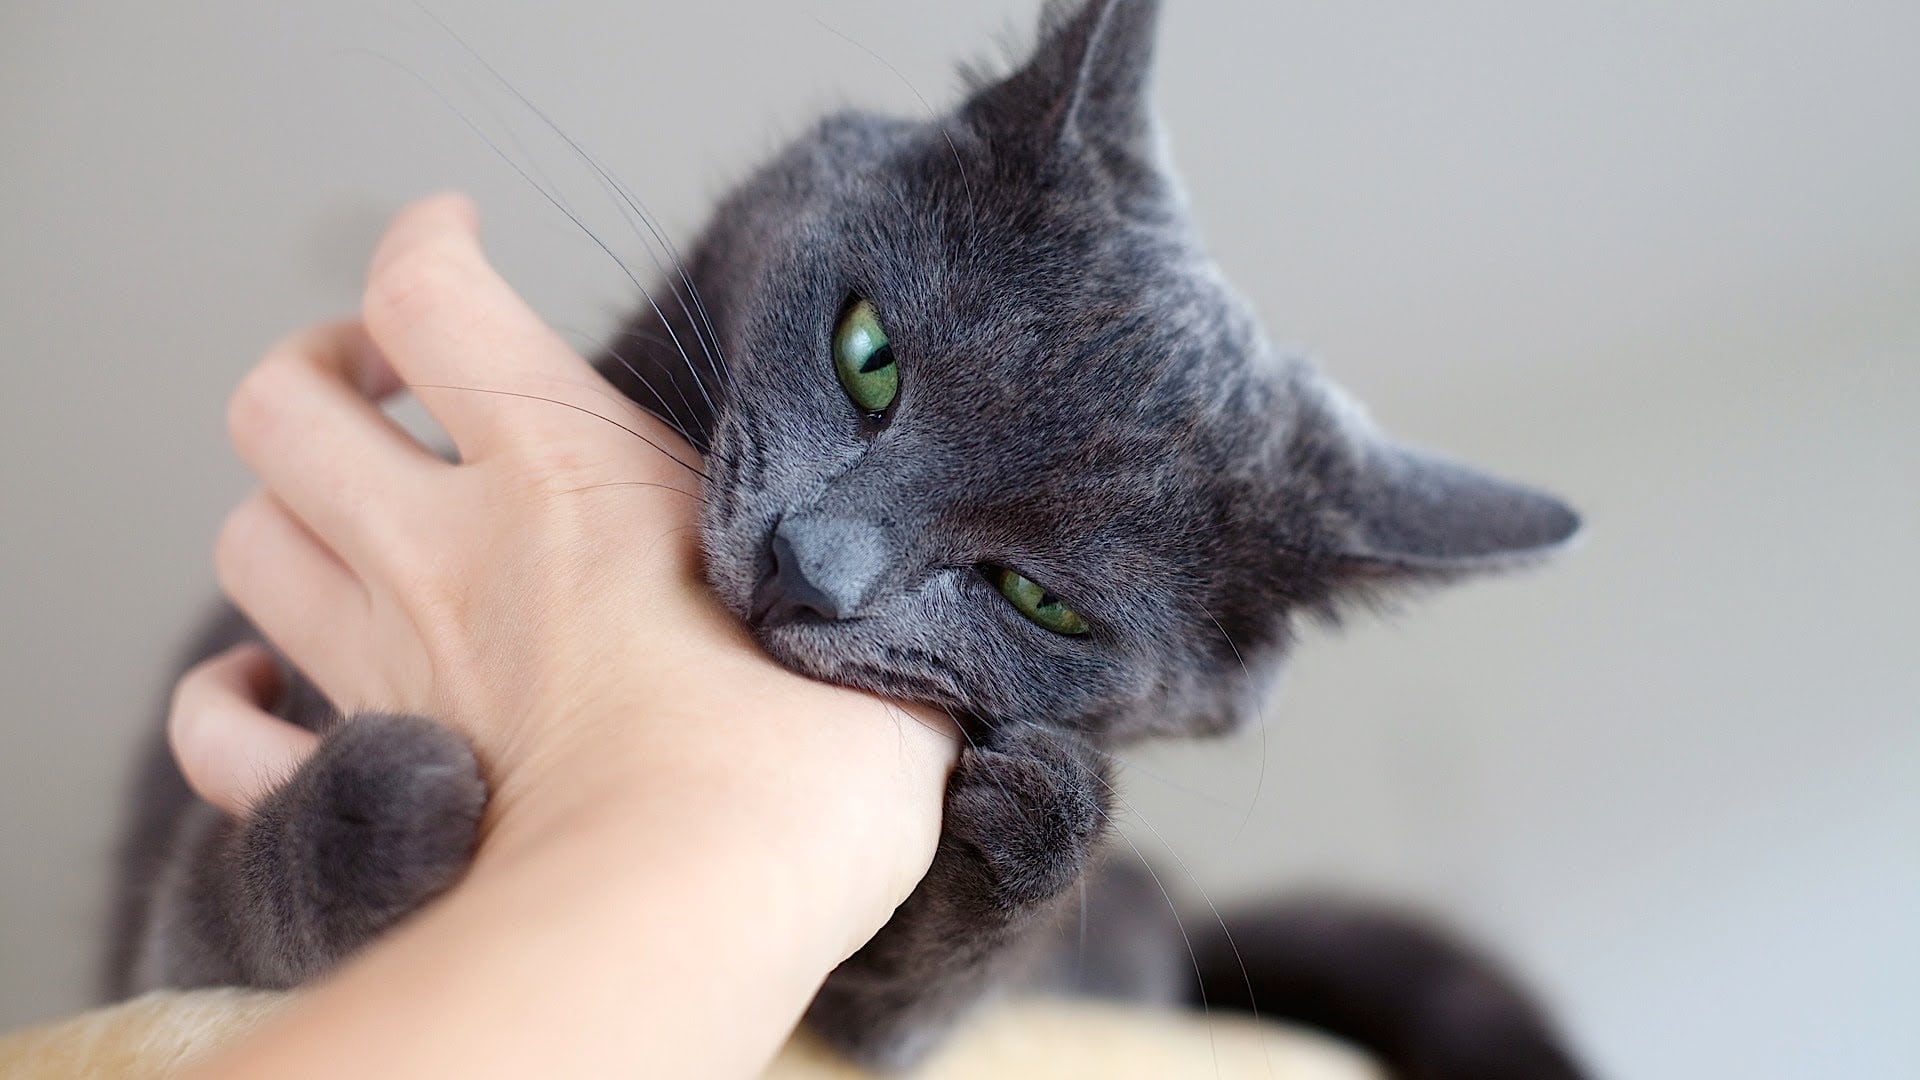 Cat biting hand